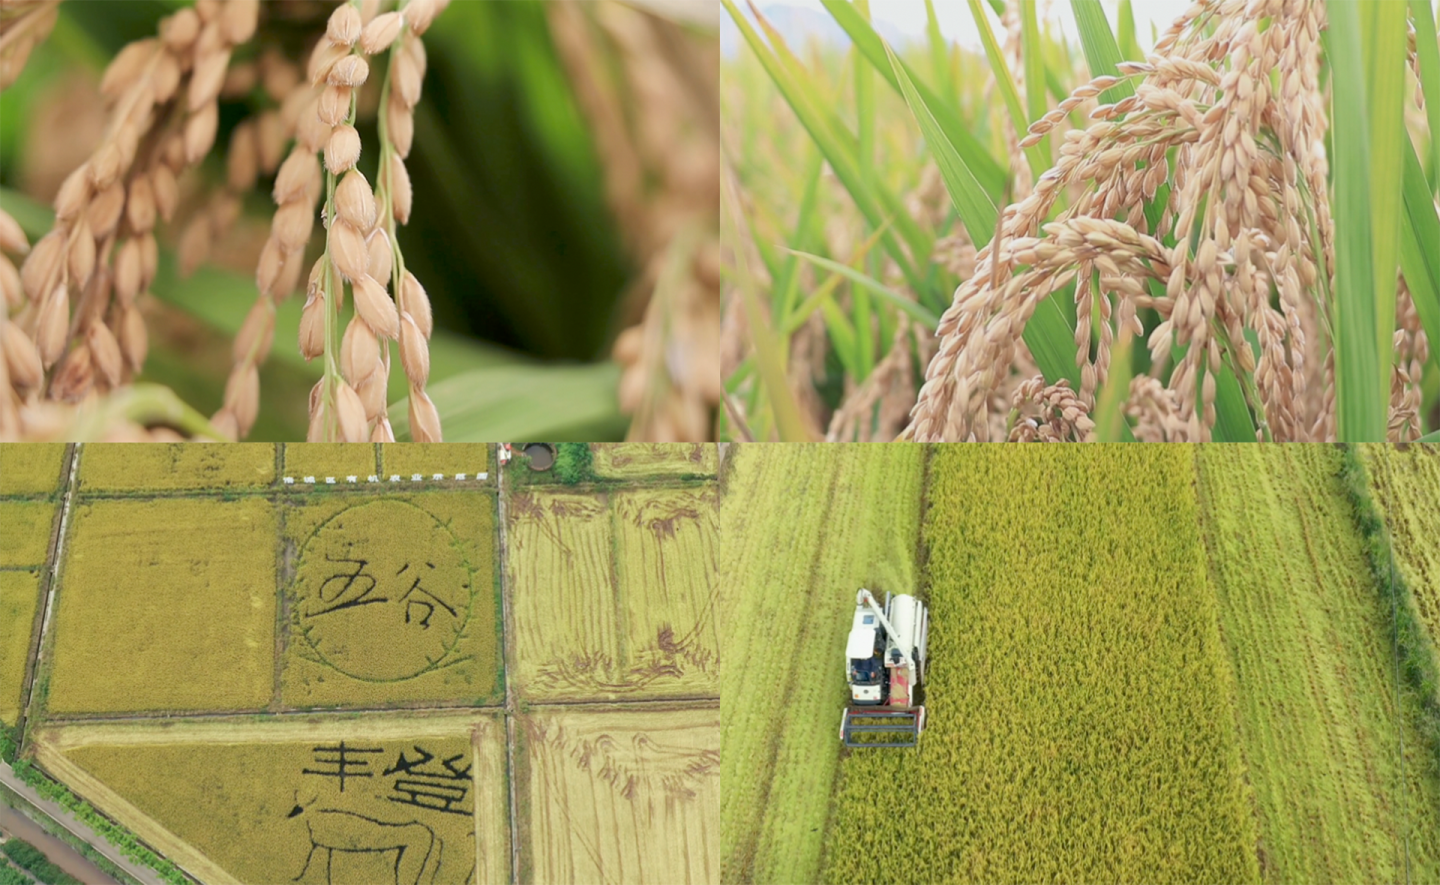 涪城水稻丰收多角度实景拍摄素材4K